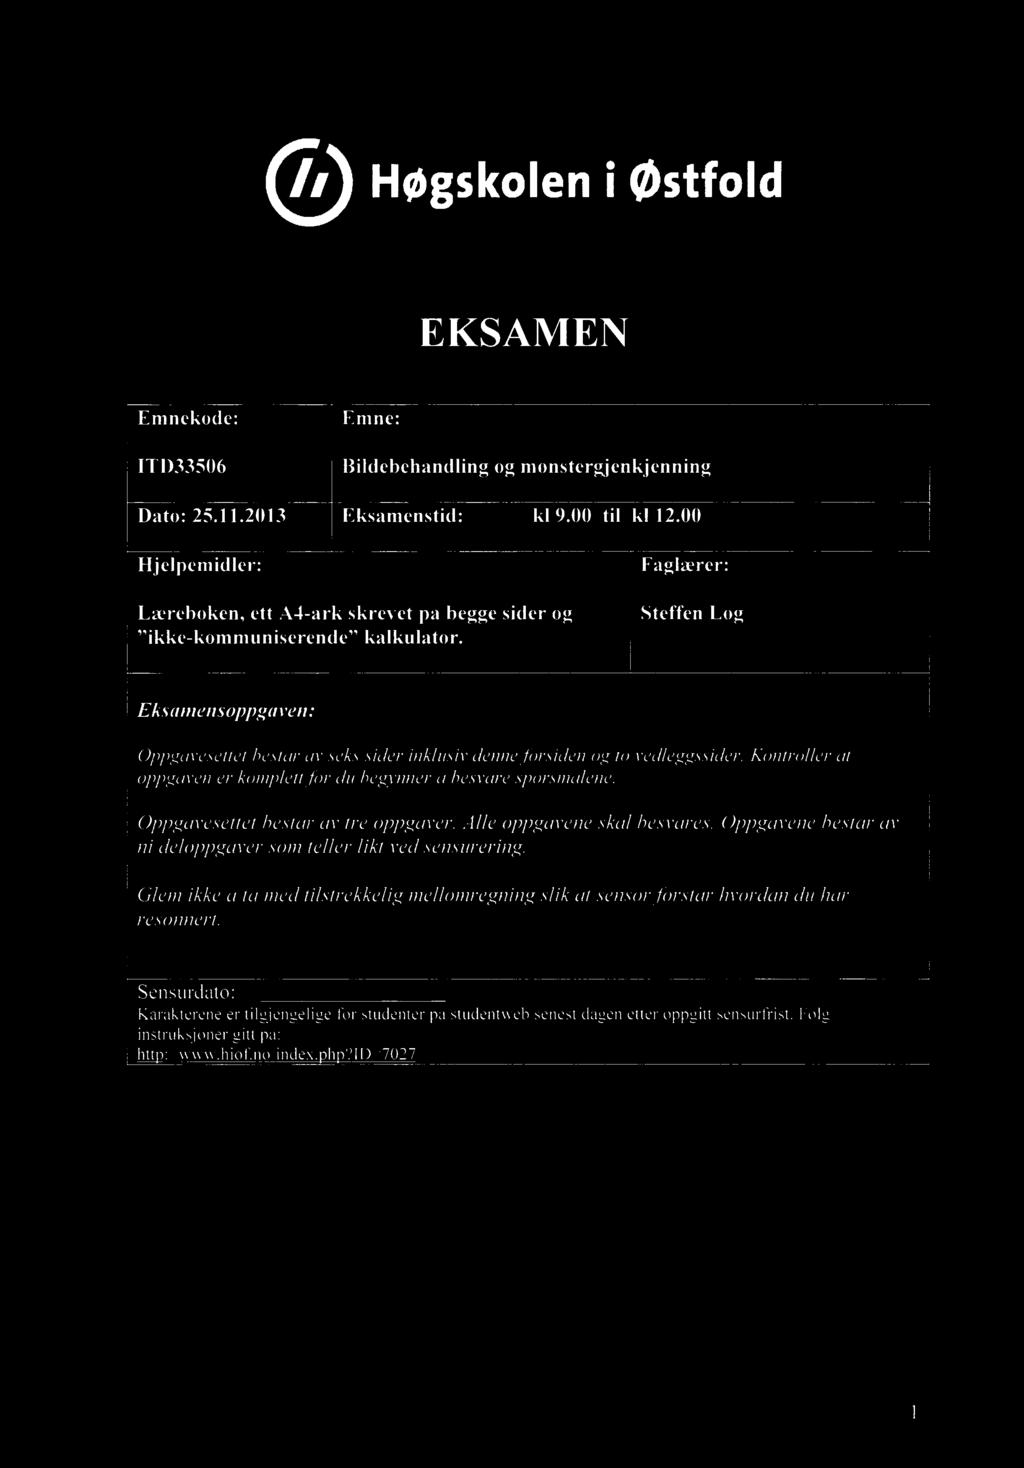 Or Høgskoleni østfold EKSAMEN Emnekode: Emne: ITD33506 Bildebehandling og monstergjenkjenning Dato: 25.11.2013 Eksamenstid: kl 9.00 til kl 12.